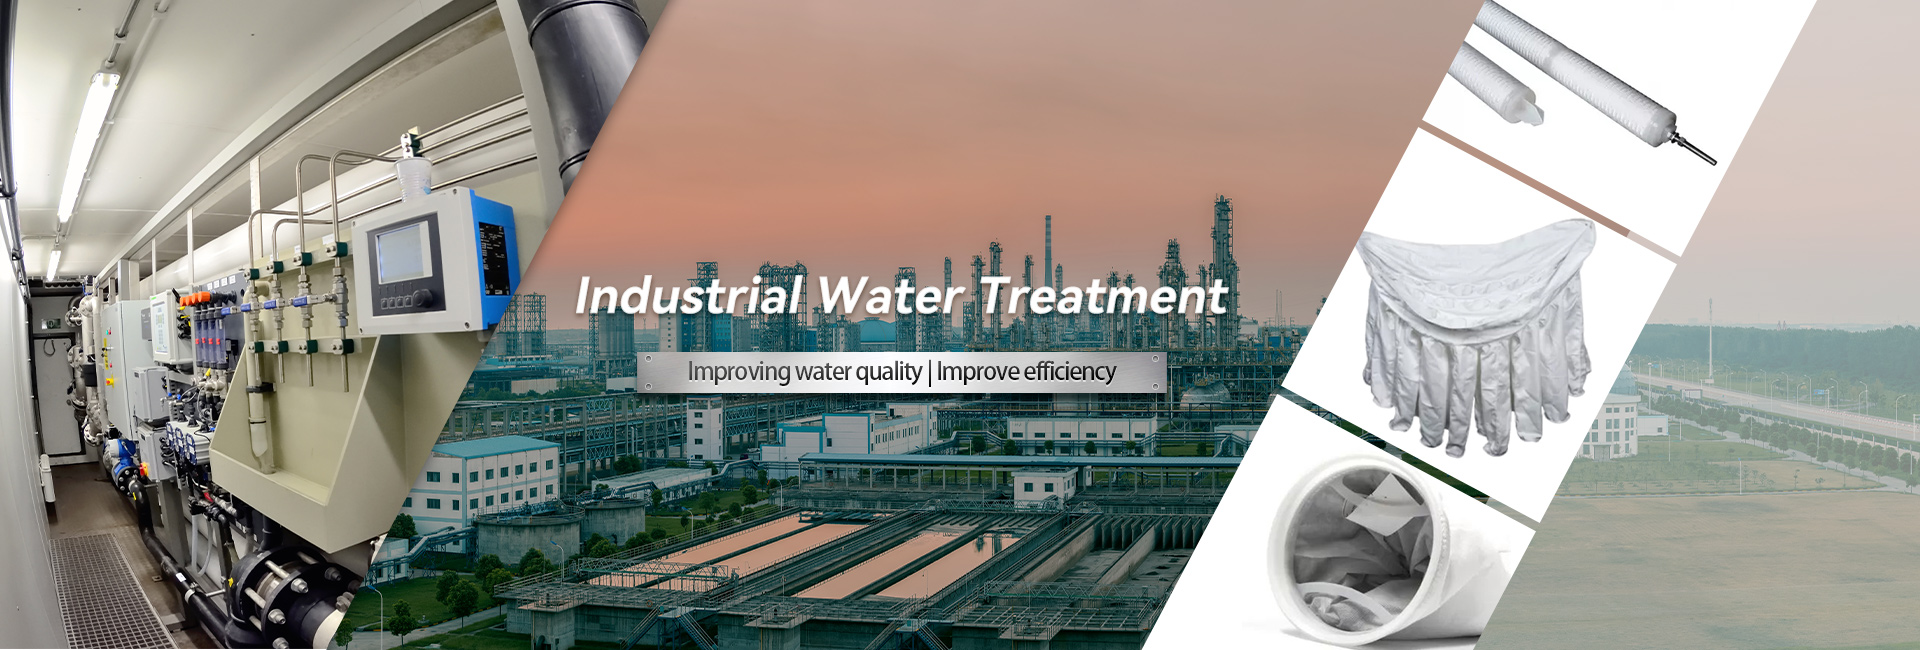 Tratamiento de aguas industriales de alta calidad